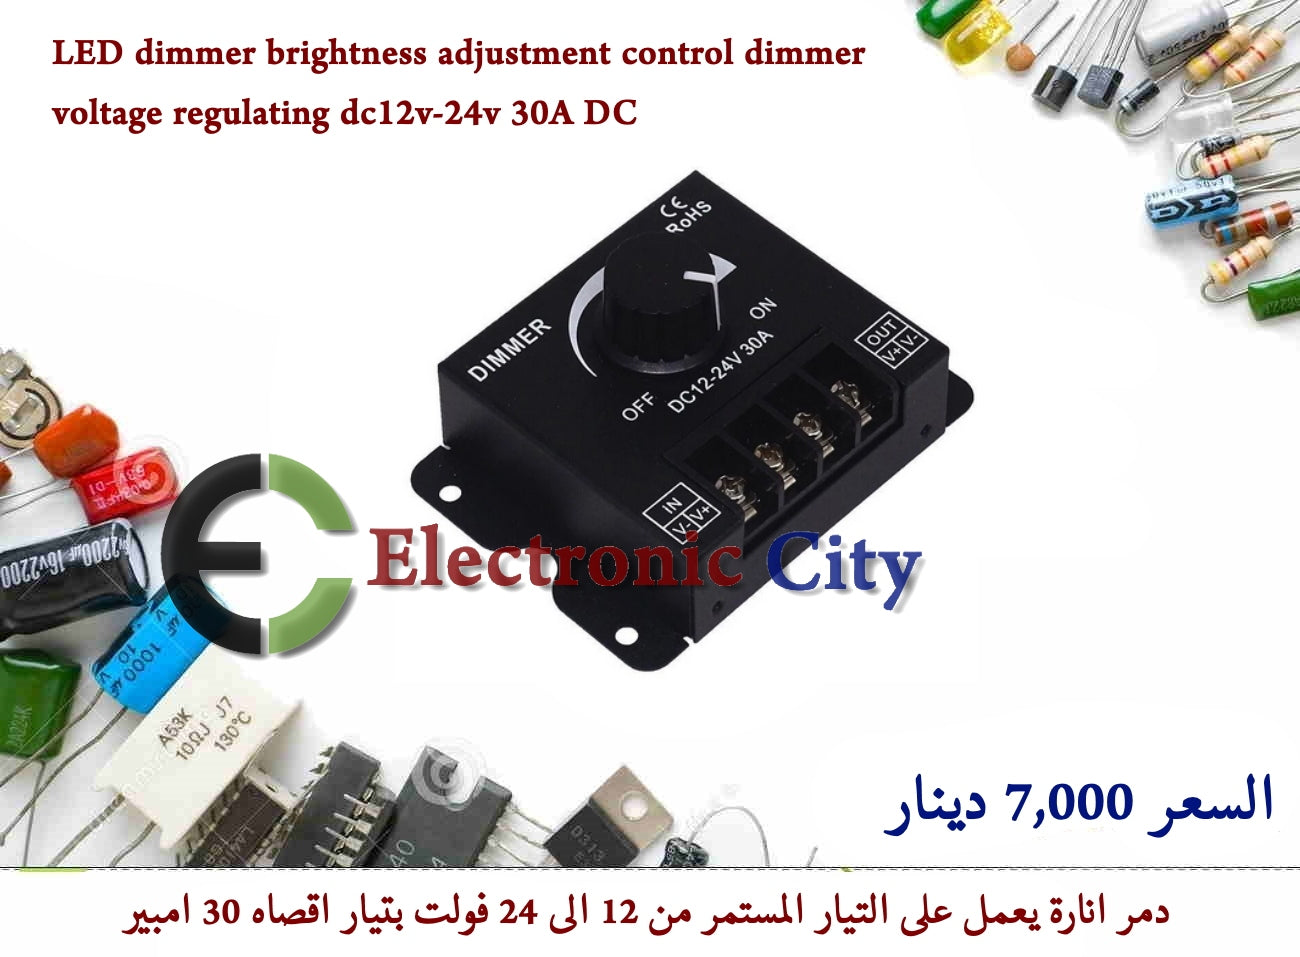 LED dimmer brightness adjustment control dimmer voltage regulating dc12v-24v 30A DC #O5 011210